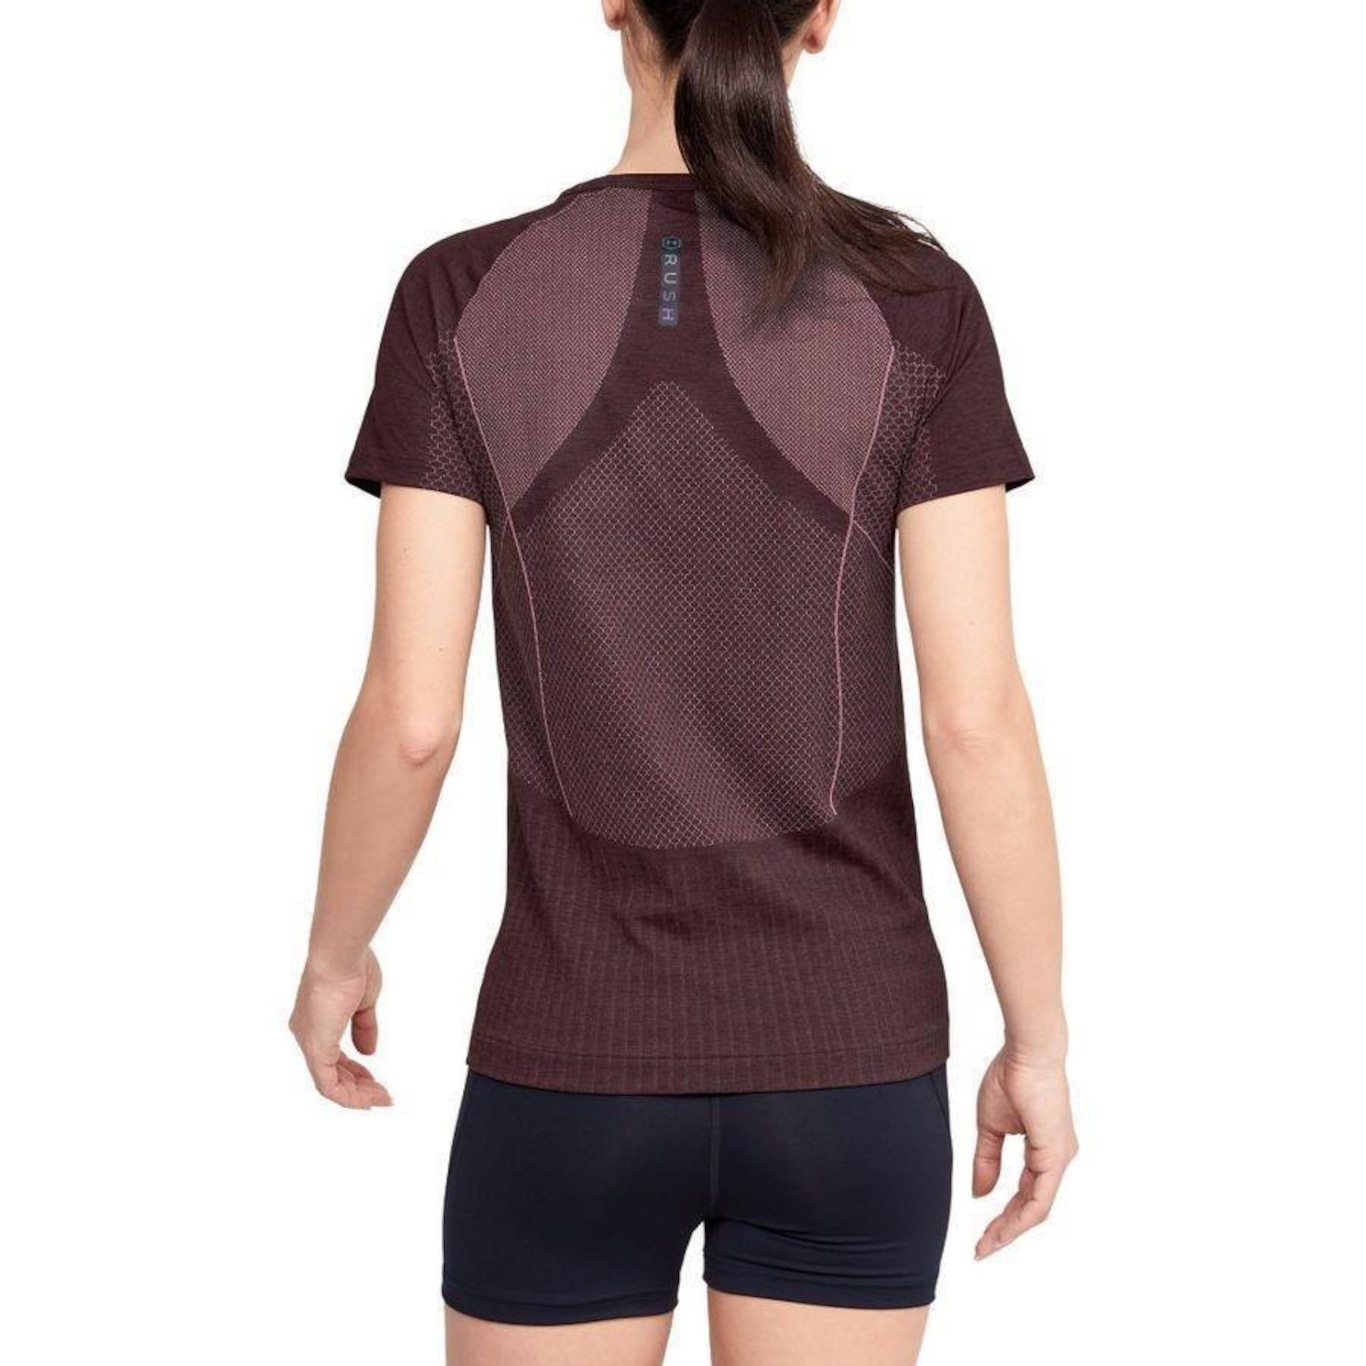 Under Armour Women's Rush Seamless Short-Sleeve T-Shirt